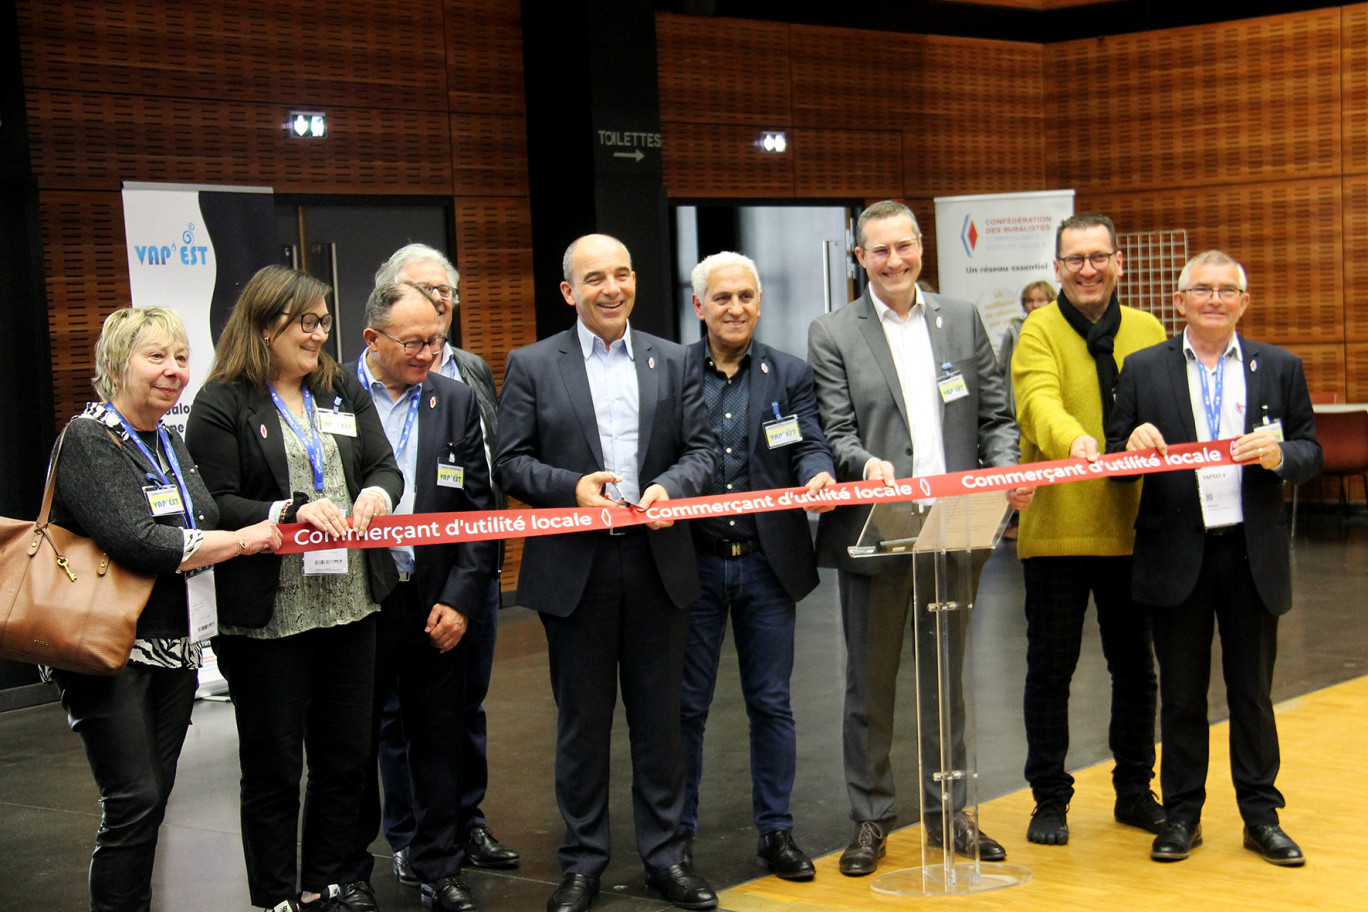 Philippe Coy, président de la Confédération des buralistes, a inauguré la troisième édition du salon Vap’Est le 25 mars à l’Arsenal de Toul. 